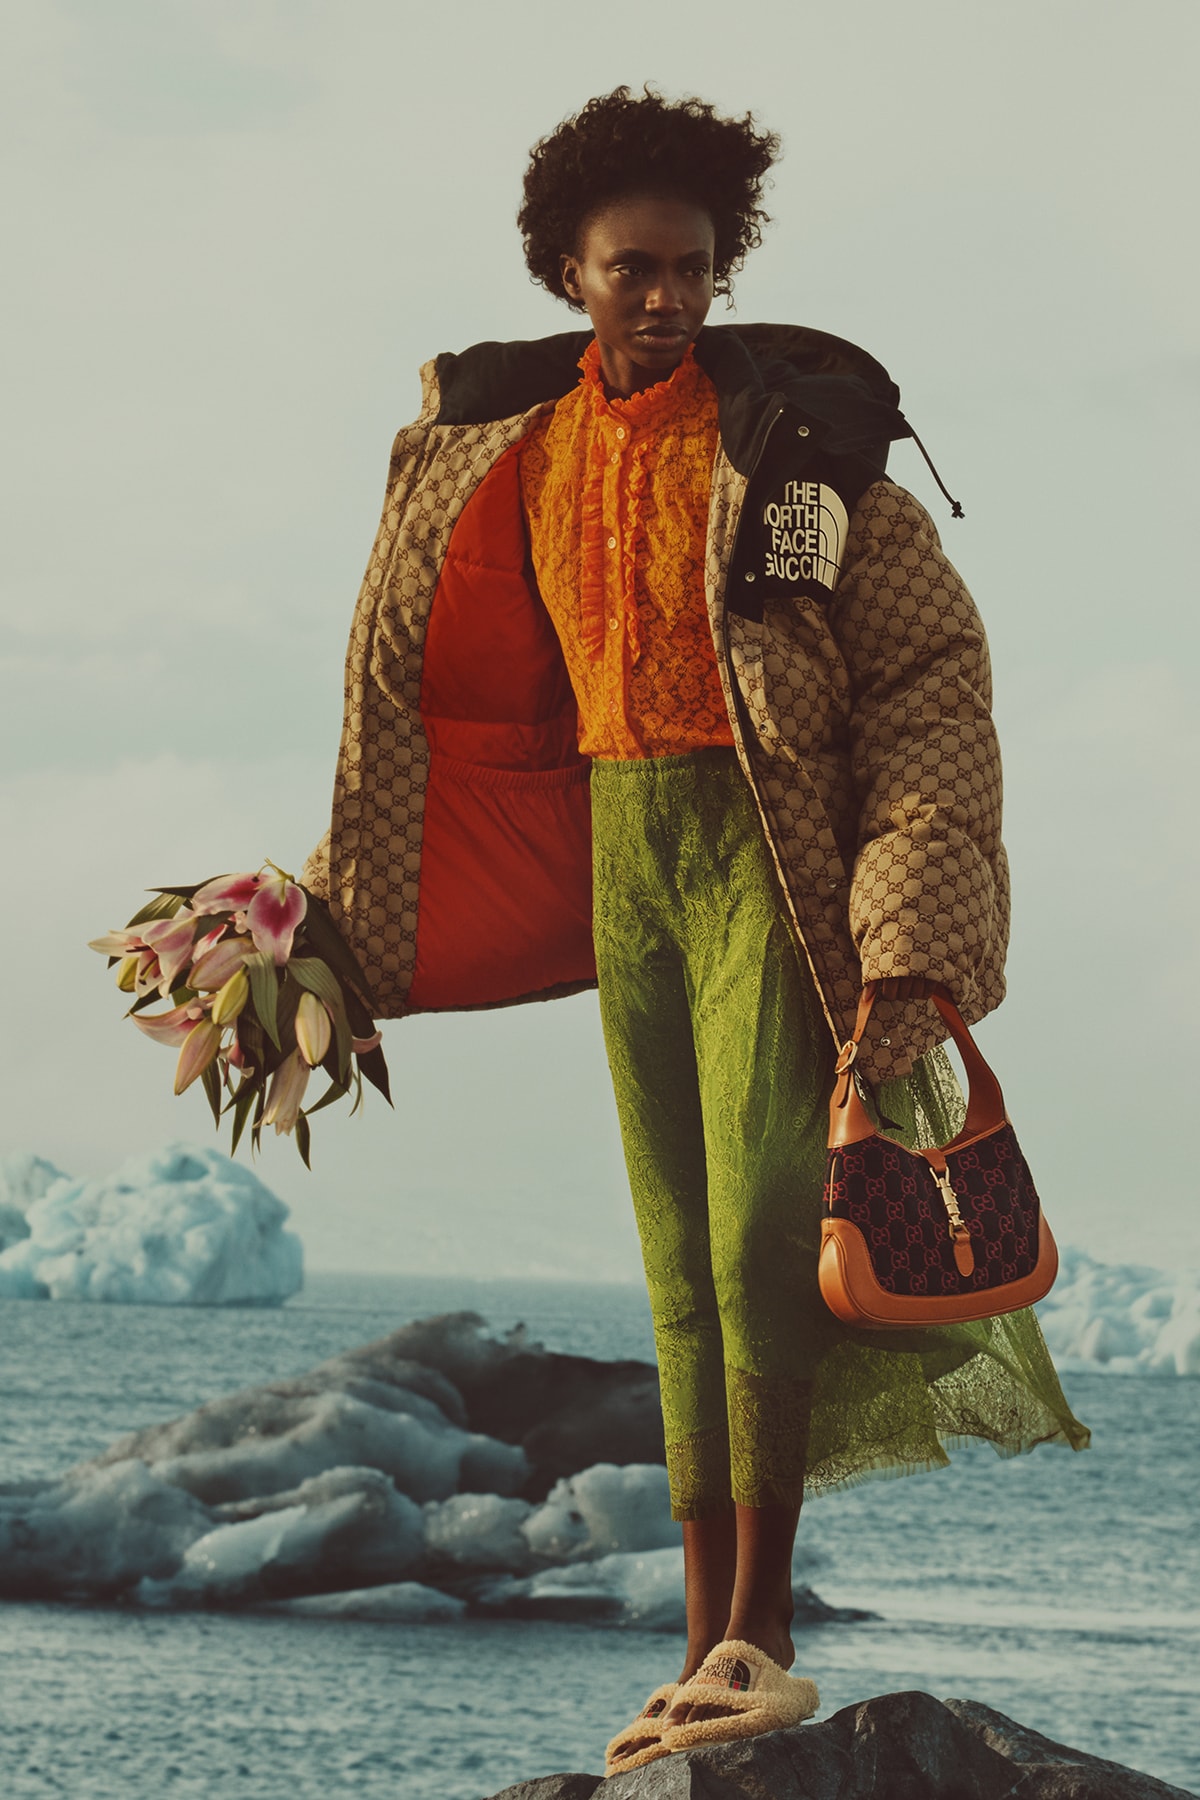 ザ・ノース・フェイスx グッチによるコラボコレクション第2弾のキャンペーンビジュアルが公開 Gucci and The North Face Present “Chapter 2” of its Iconic Collaboration Part Two Collection Design 